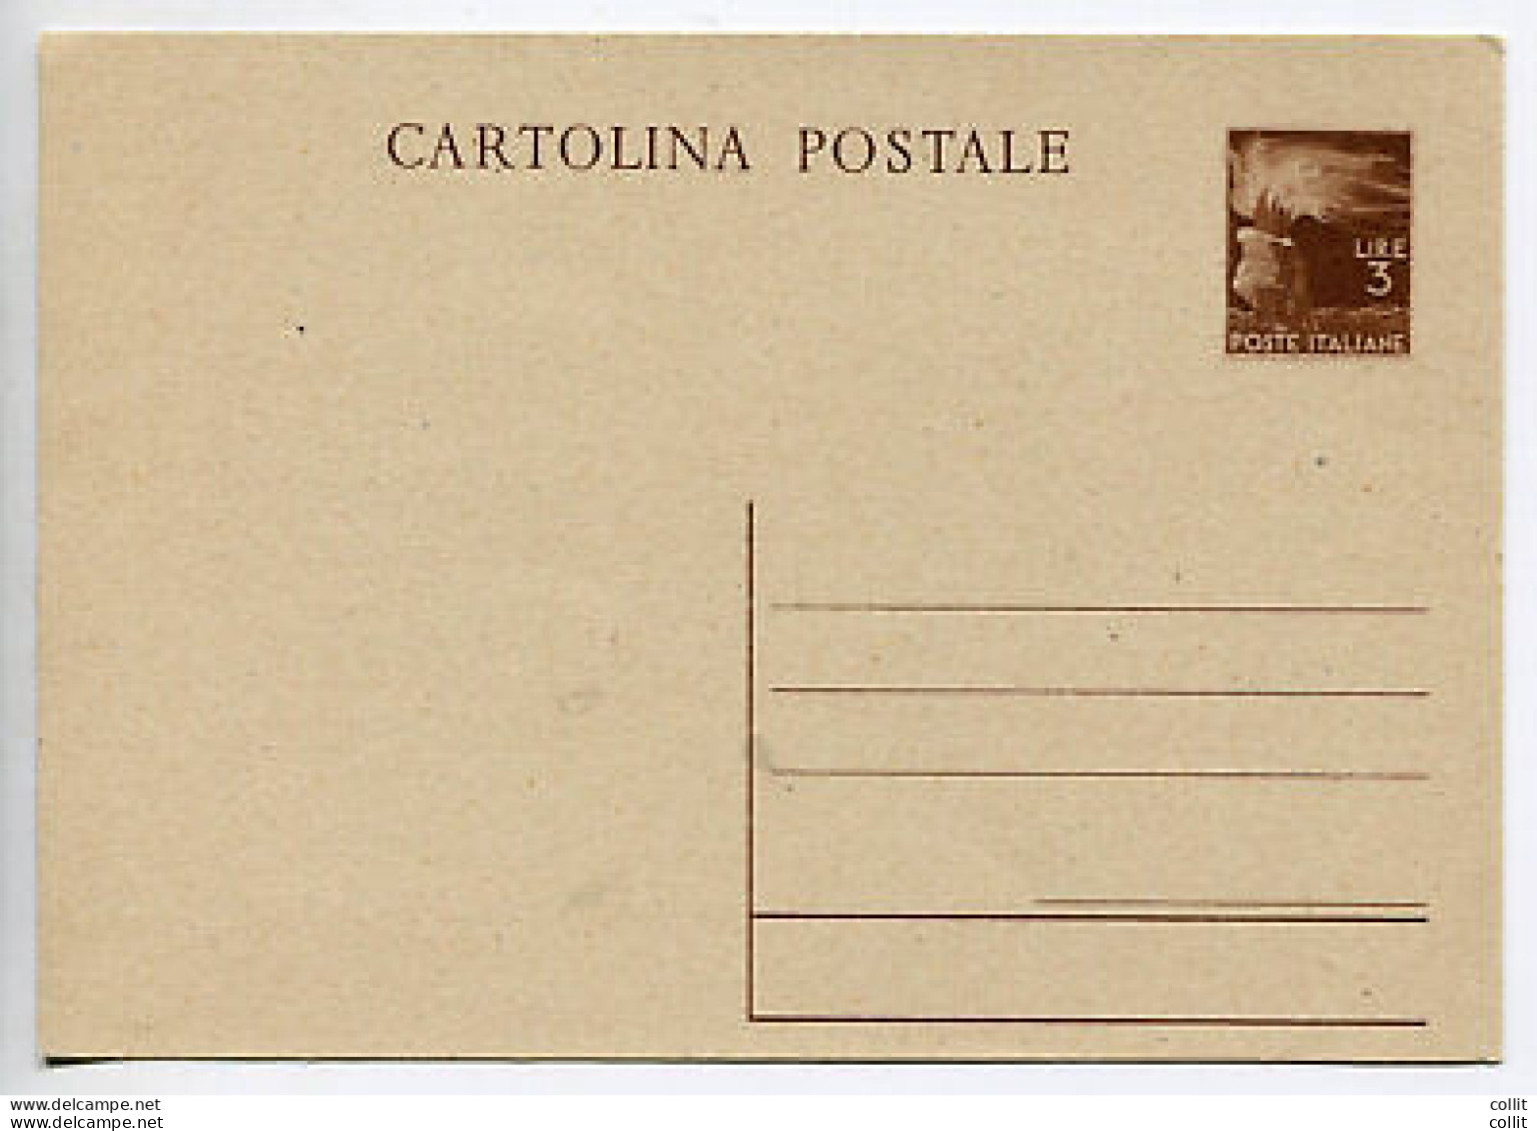 Cartolina Postale L. 3 Democratica - Interi Postali